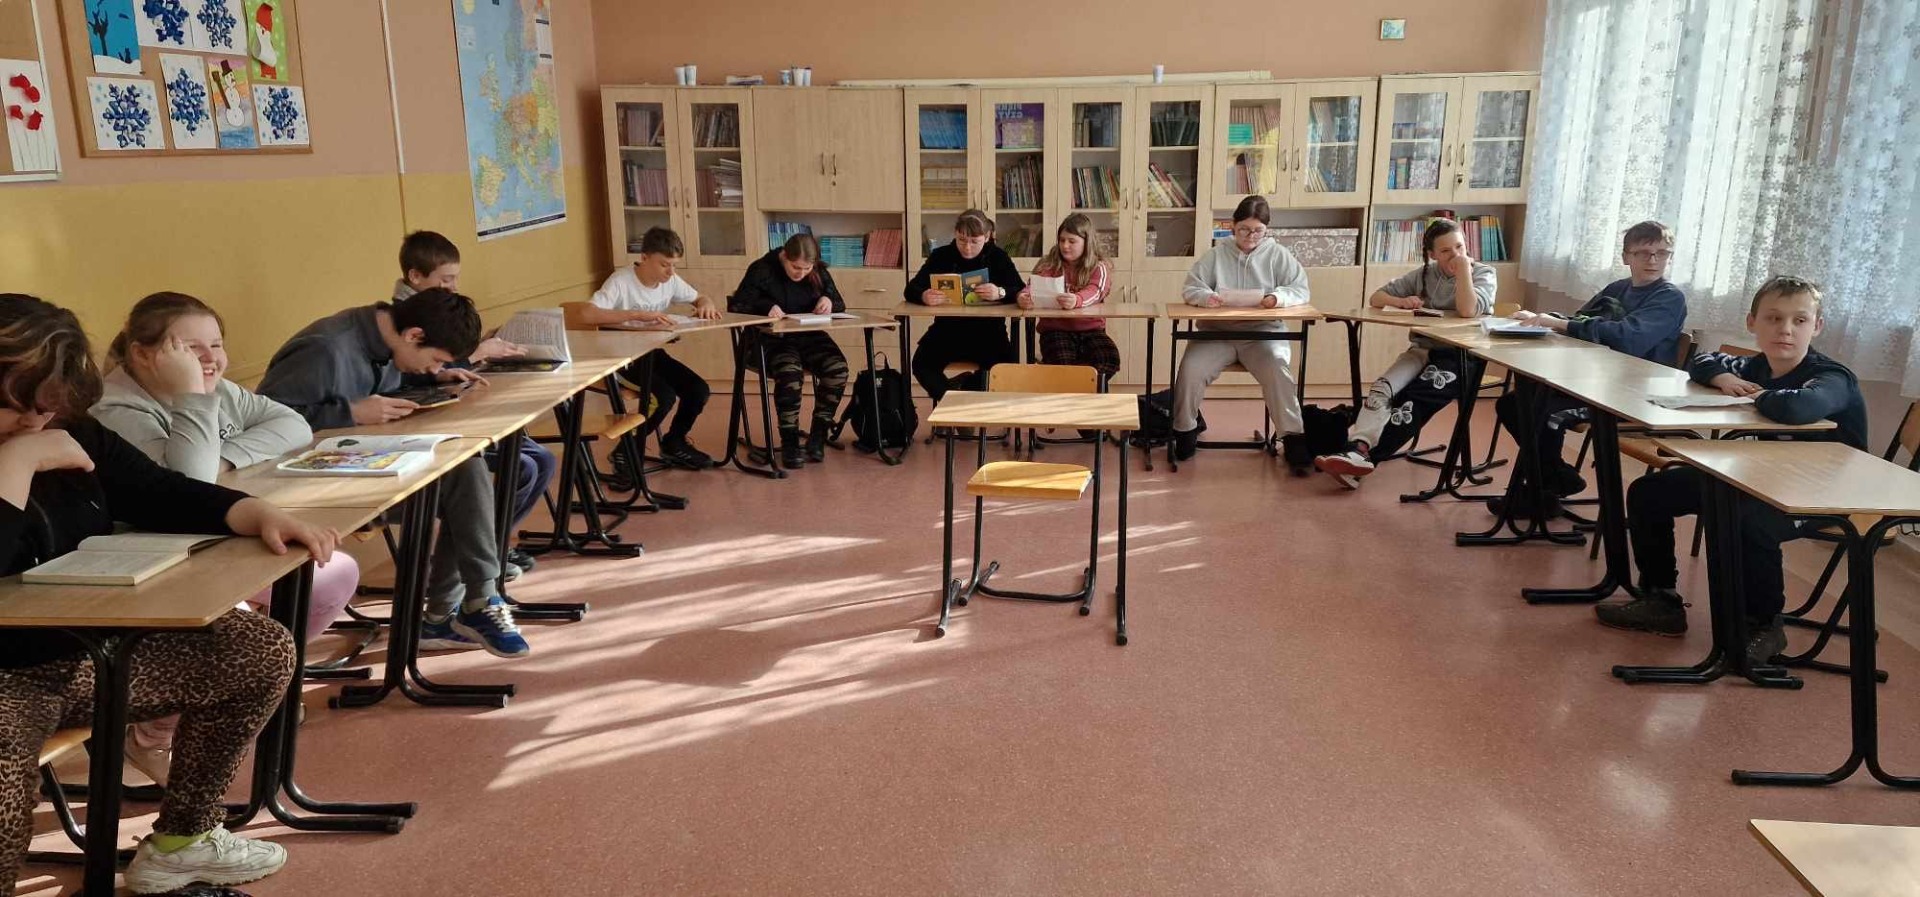 Uczniowie siedzą  przy ławkach ułożonych w kształt litery U